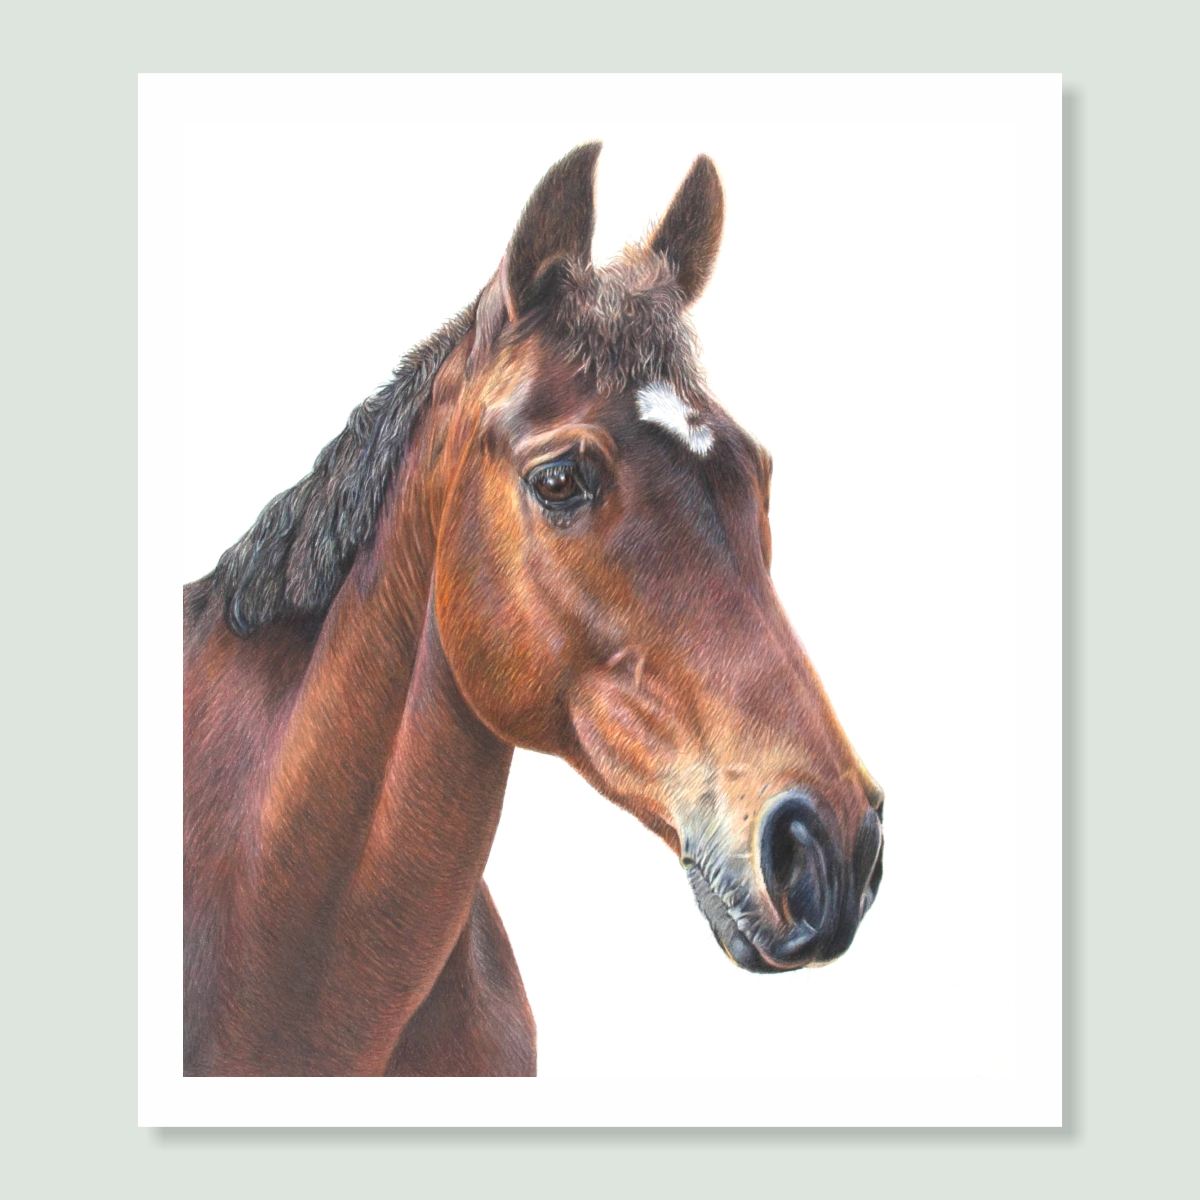 Crowne Affaere - coloured pencil horse portrait by pet artist Angie.